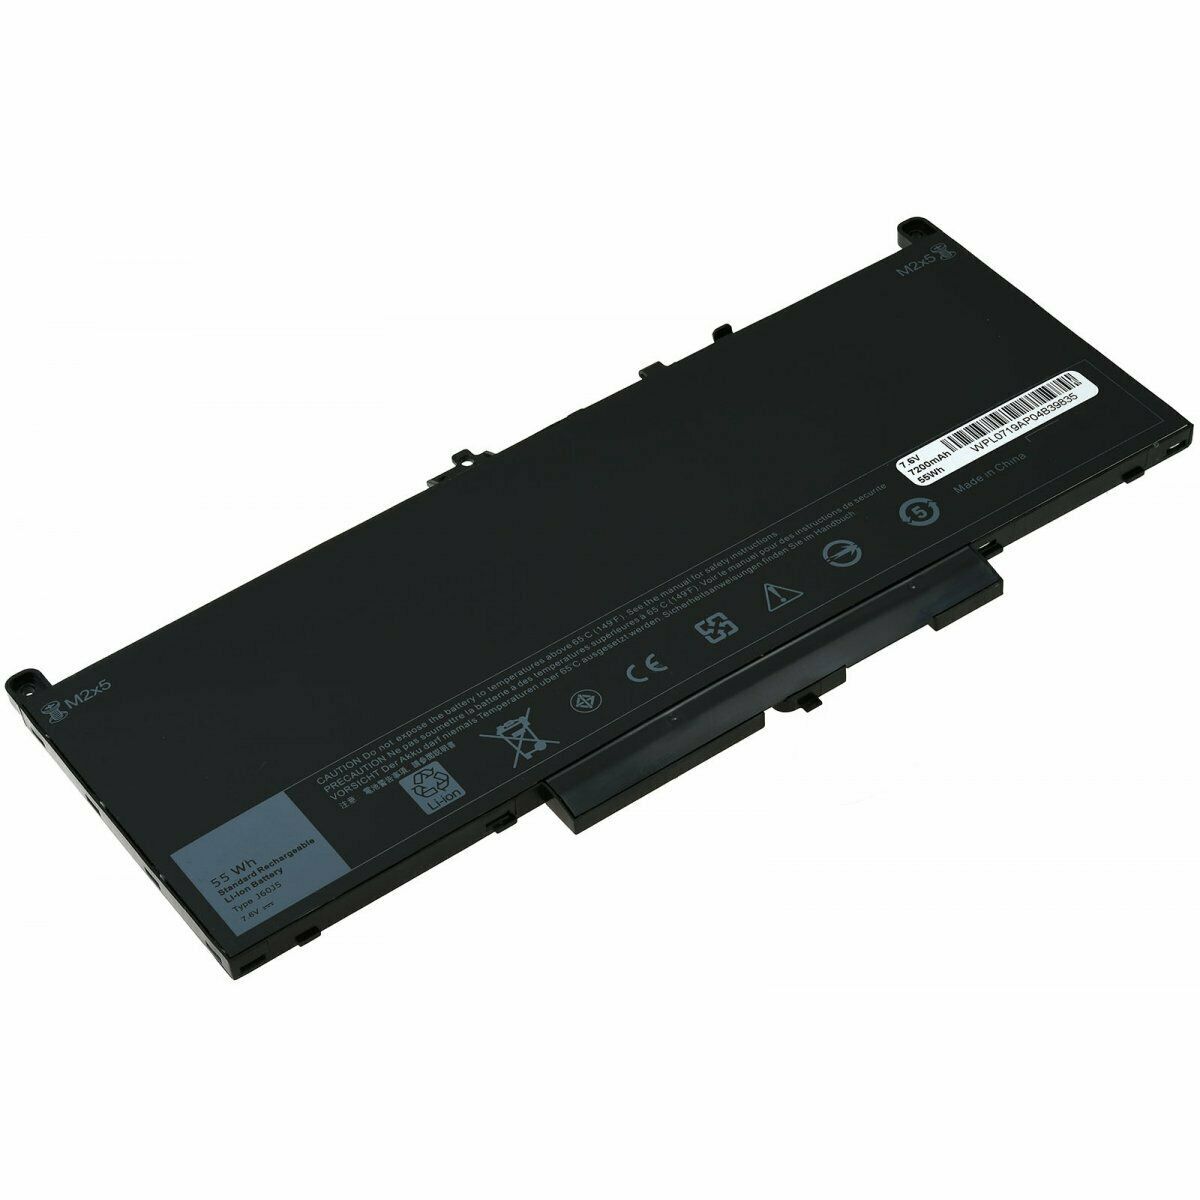 Batteri til Dell Latitude E7270,E7470 0MC34Y 242WD J60J5 MC34Y (kompatibelt) - Klik på billedet for at lukke